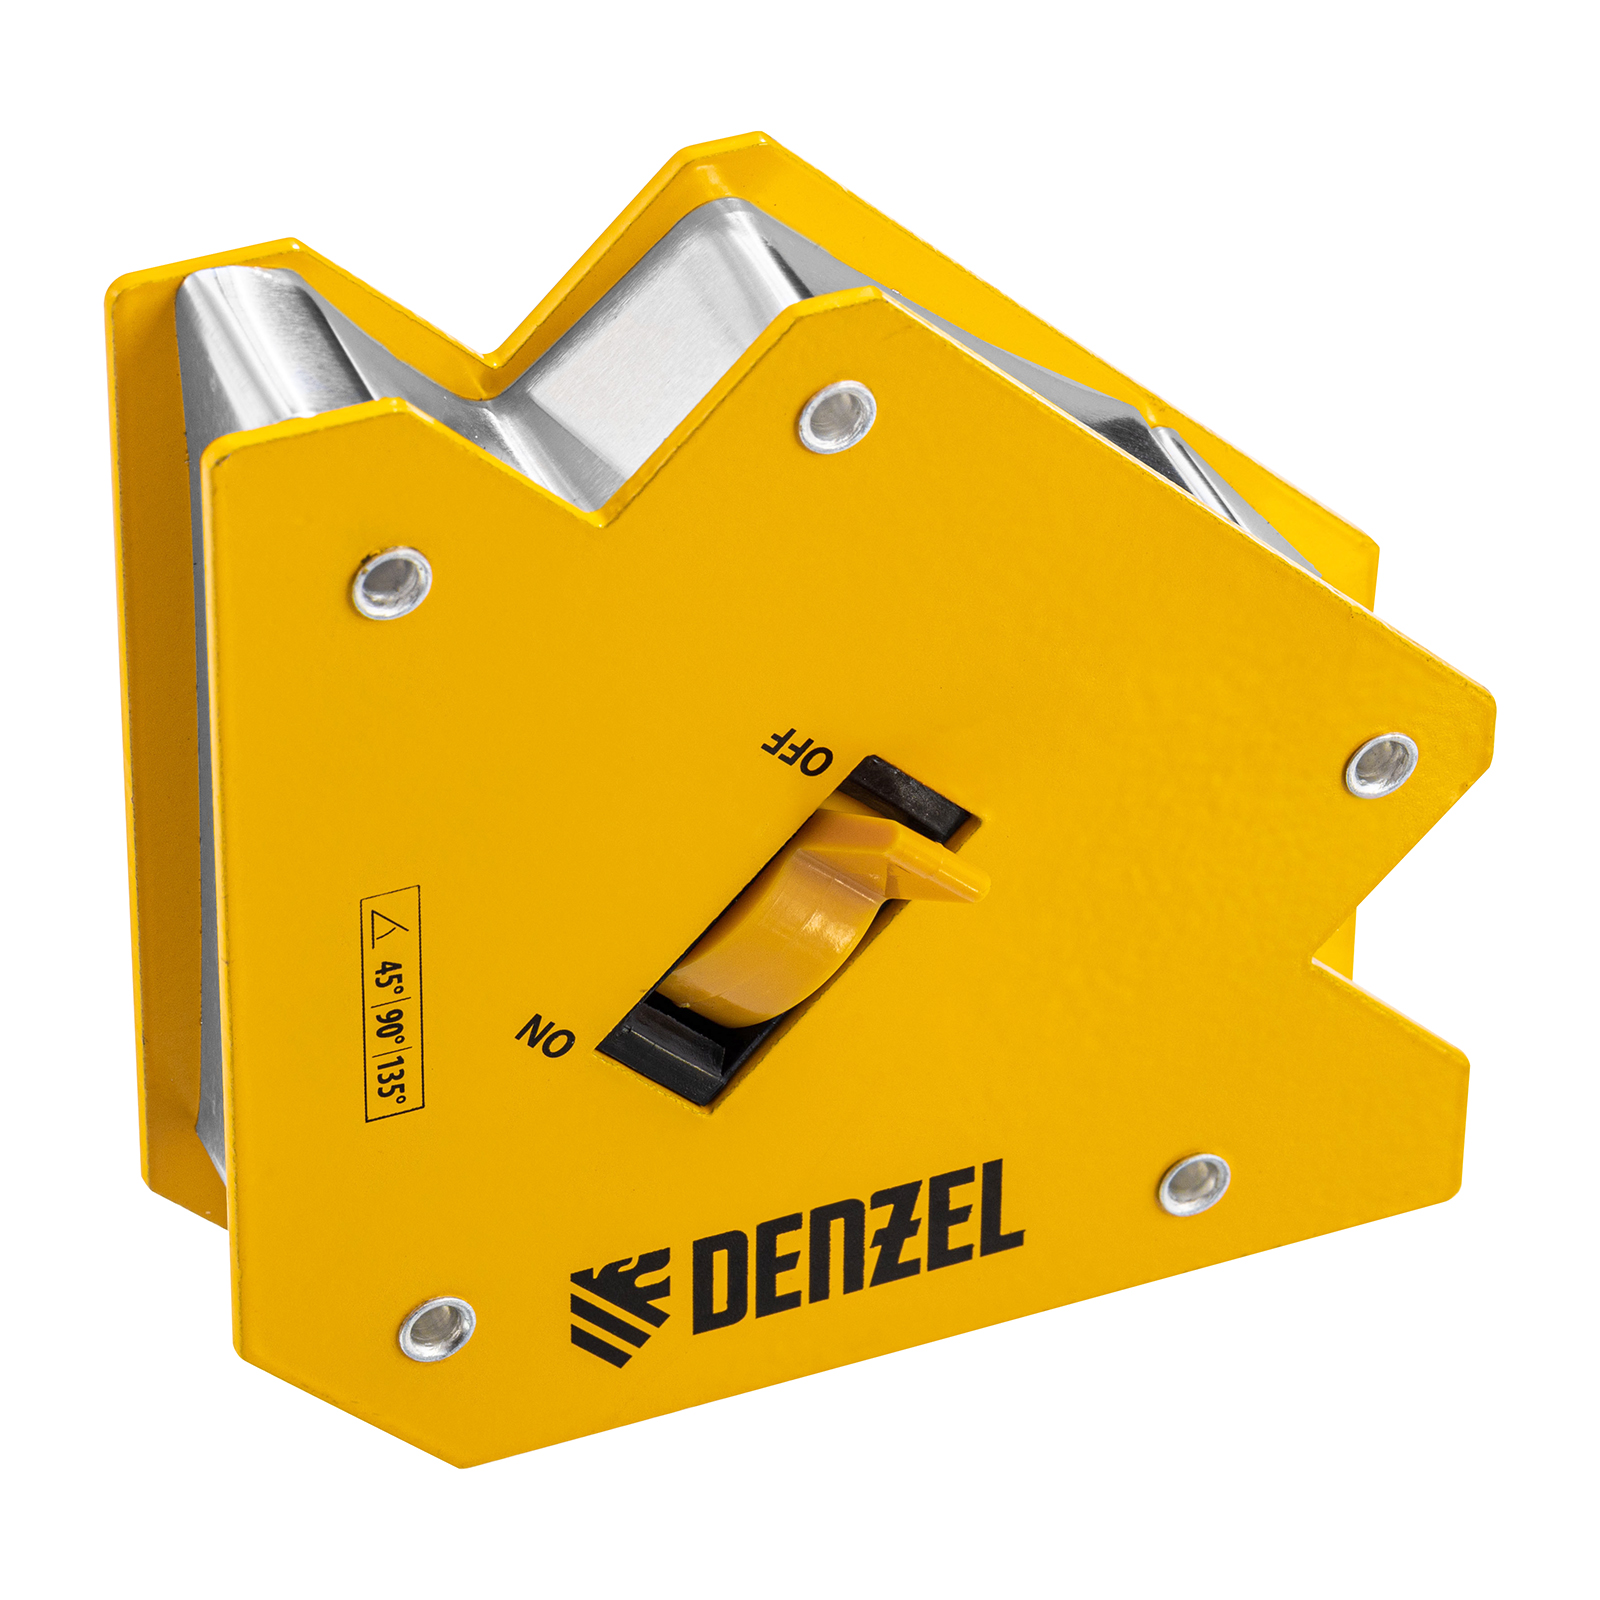 Фиксатор магнитный отключаемый для сварочных работ DENZEL усилие 30 LB, 45х90х135 гр 97563 магнитный фиксатор для сварочных работ denzel